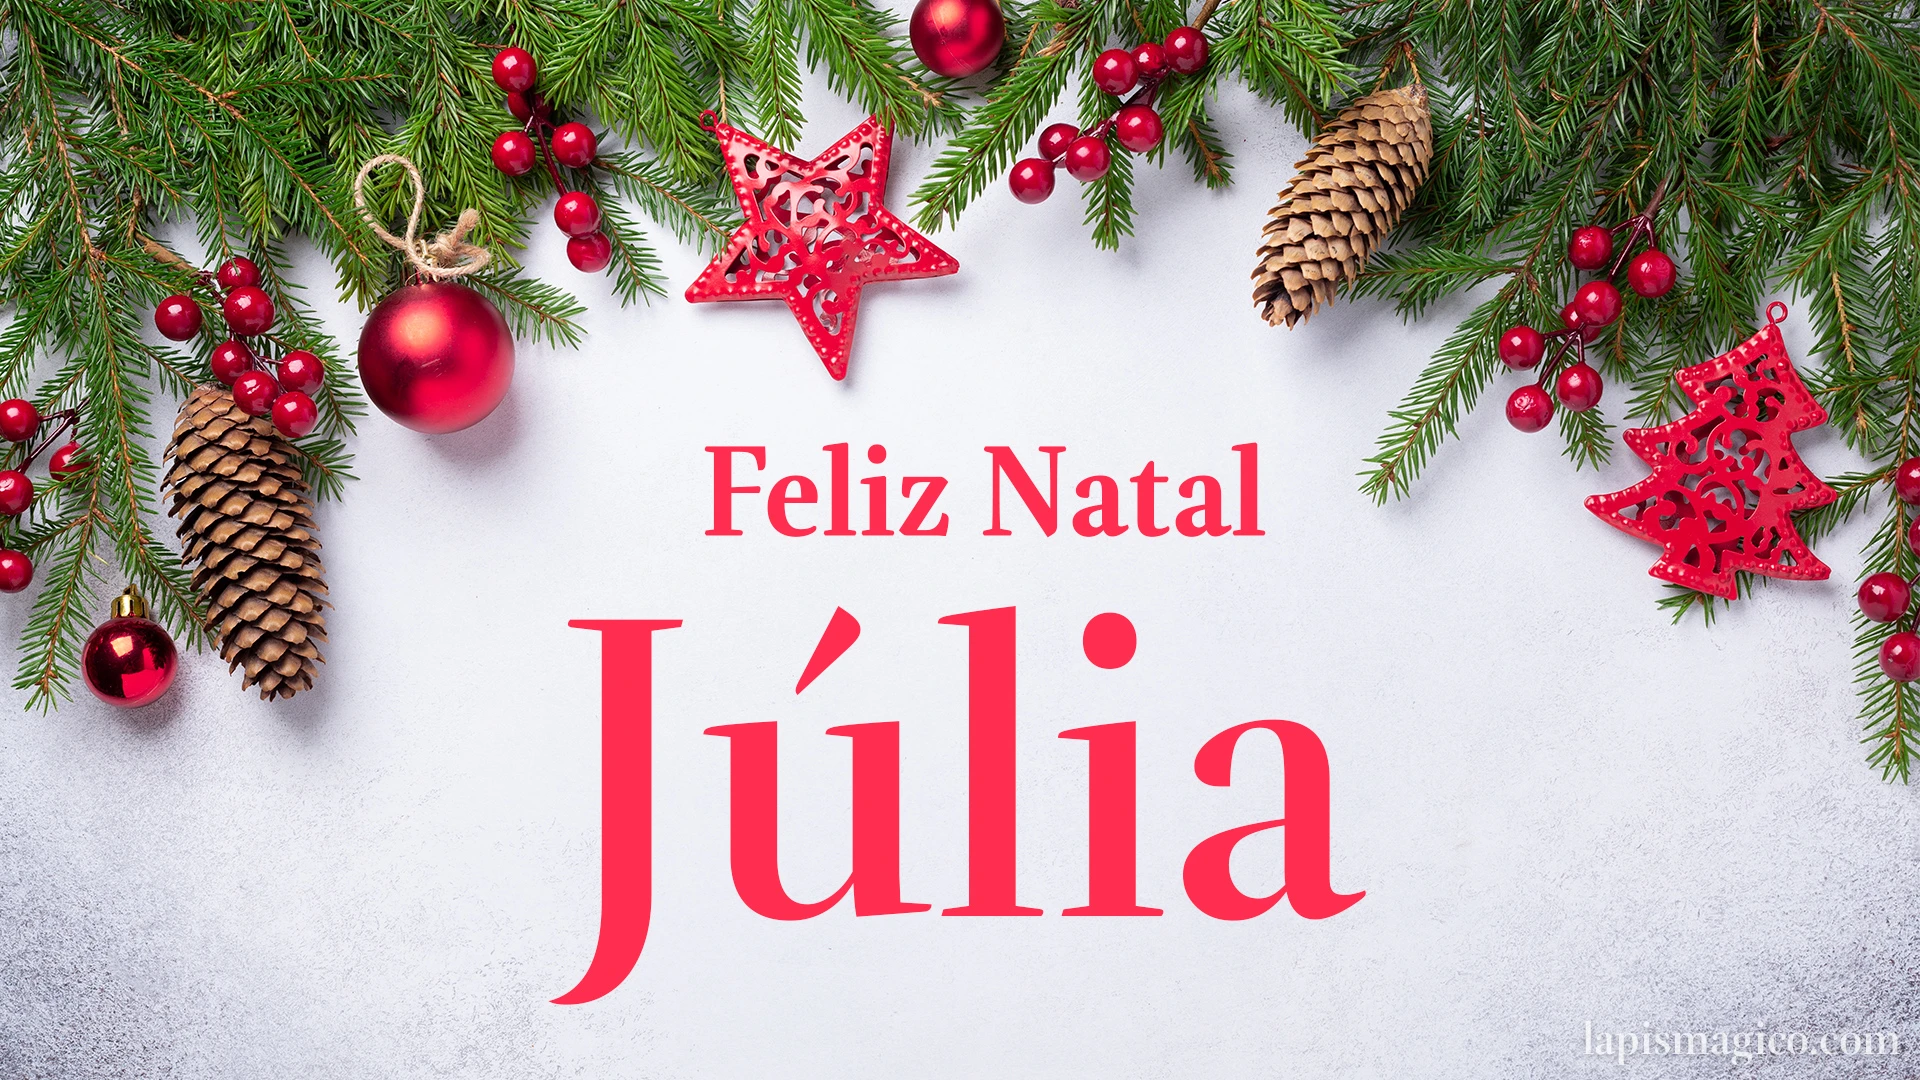 Oh Júlia, cinco postais de Feliz Natal Postal com o teu nome